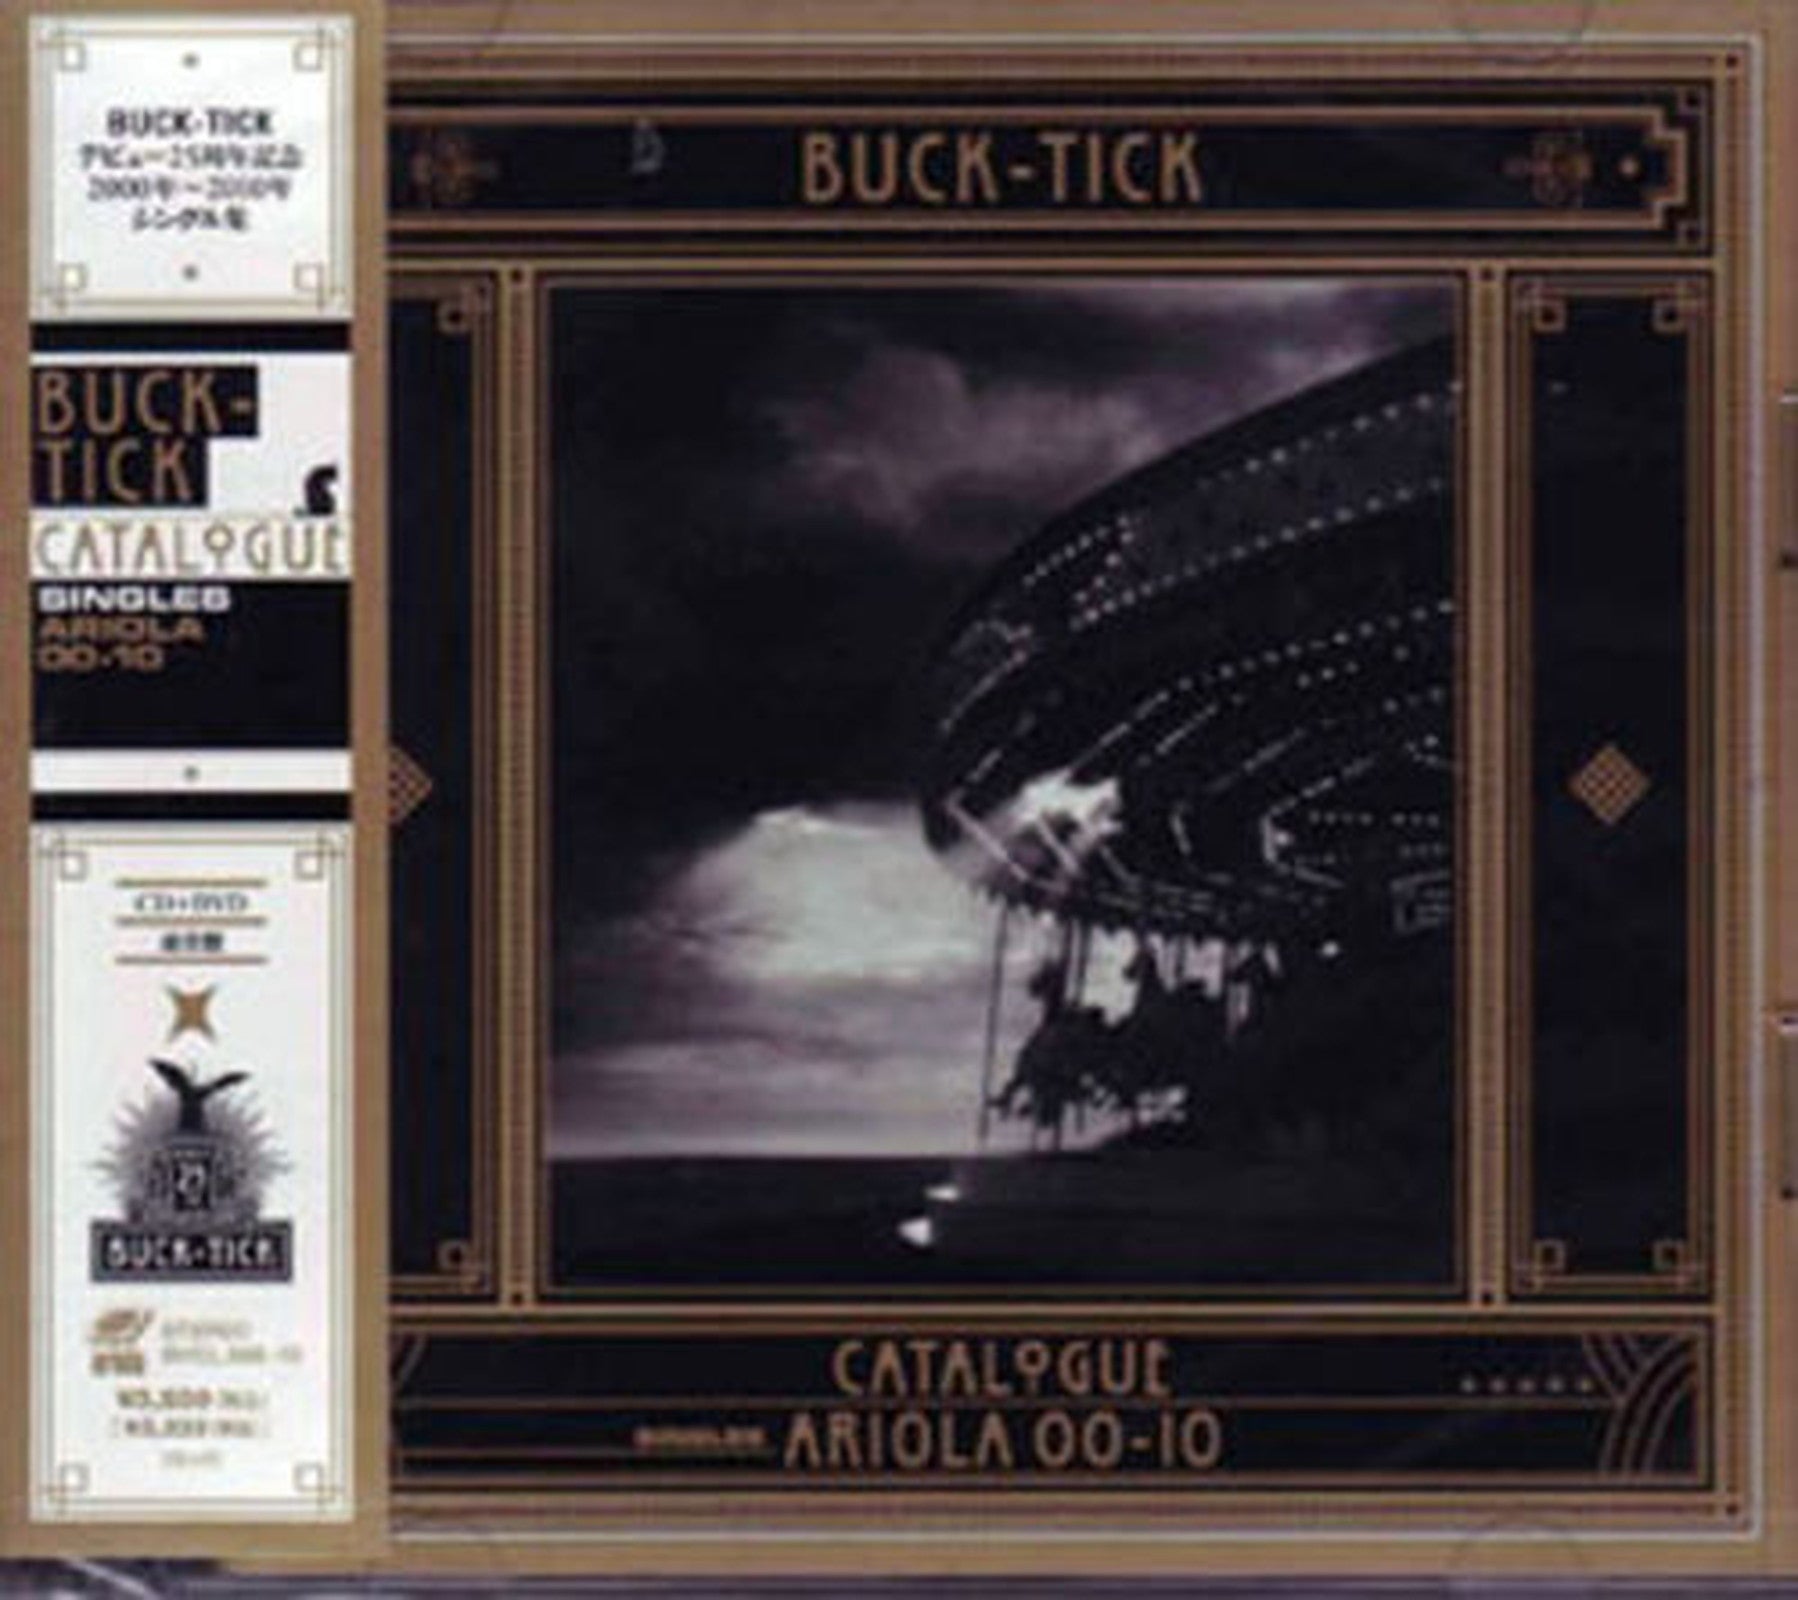 Buck-Tick - Catalogue Ariola 00-10 - Japan CD+DVD – CDs Vinyl